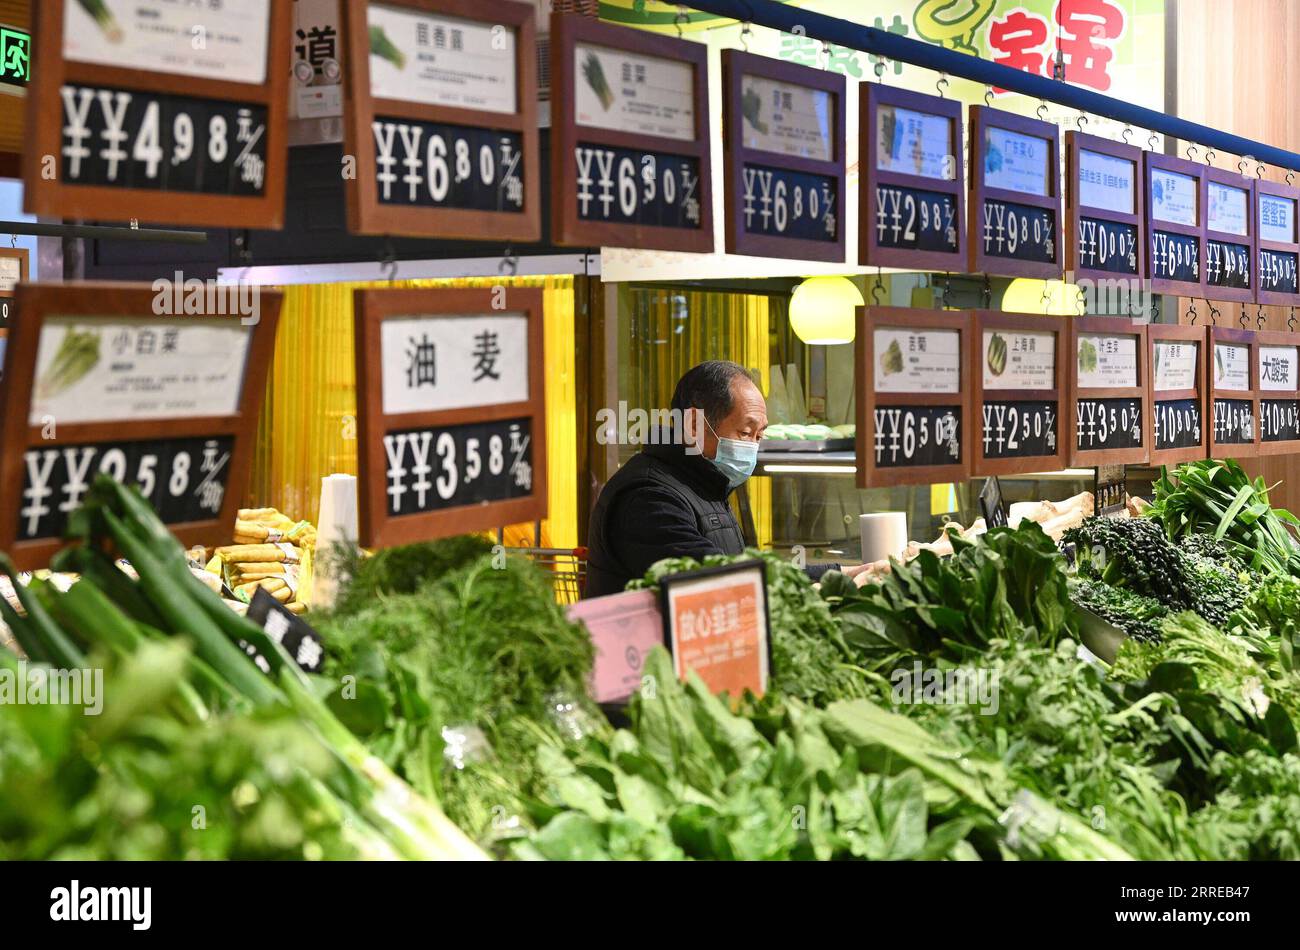 220216 -- HANDAN, 16. Februar 2022 -- Ein Kunde kauft Gemüse in einem Supermarkt in Handan, nordchinesische Provinz Hebei, 16. Februar 2022. Chinas Inflation wurde im Januar weiter gedämpft, da die Lebensmittelpreise rückläufig waren, während Preisrückgänge in den Kohle- und Stahlsektoren die Inflation am Werkstor zu einer gemäßigten Inflation führten, wie offizielle Daten am Mittwoch zeigten. Der Verbraucherpreisindex VPI, ein Hauptindikator für die Inflation, stieg im Januar gegenüber dem Vorjahr um 0,9 Prozent, nach dem Anstieg um 1,5 Prozent vor einem Monat, wie Daten des National Bureau of Statistics NBS zeigten. Foto von /Xinhua CHINA-JANUARY-CPI CN HaoxQunying PUBLICATIO Stockfoto